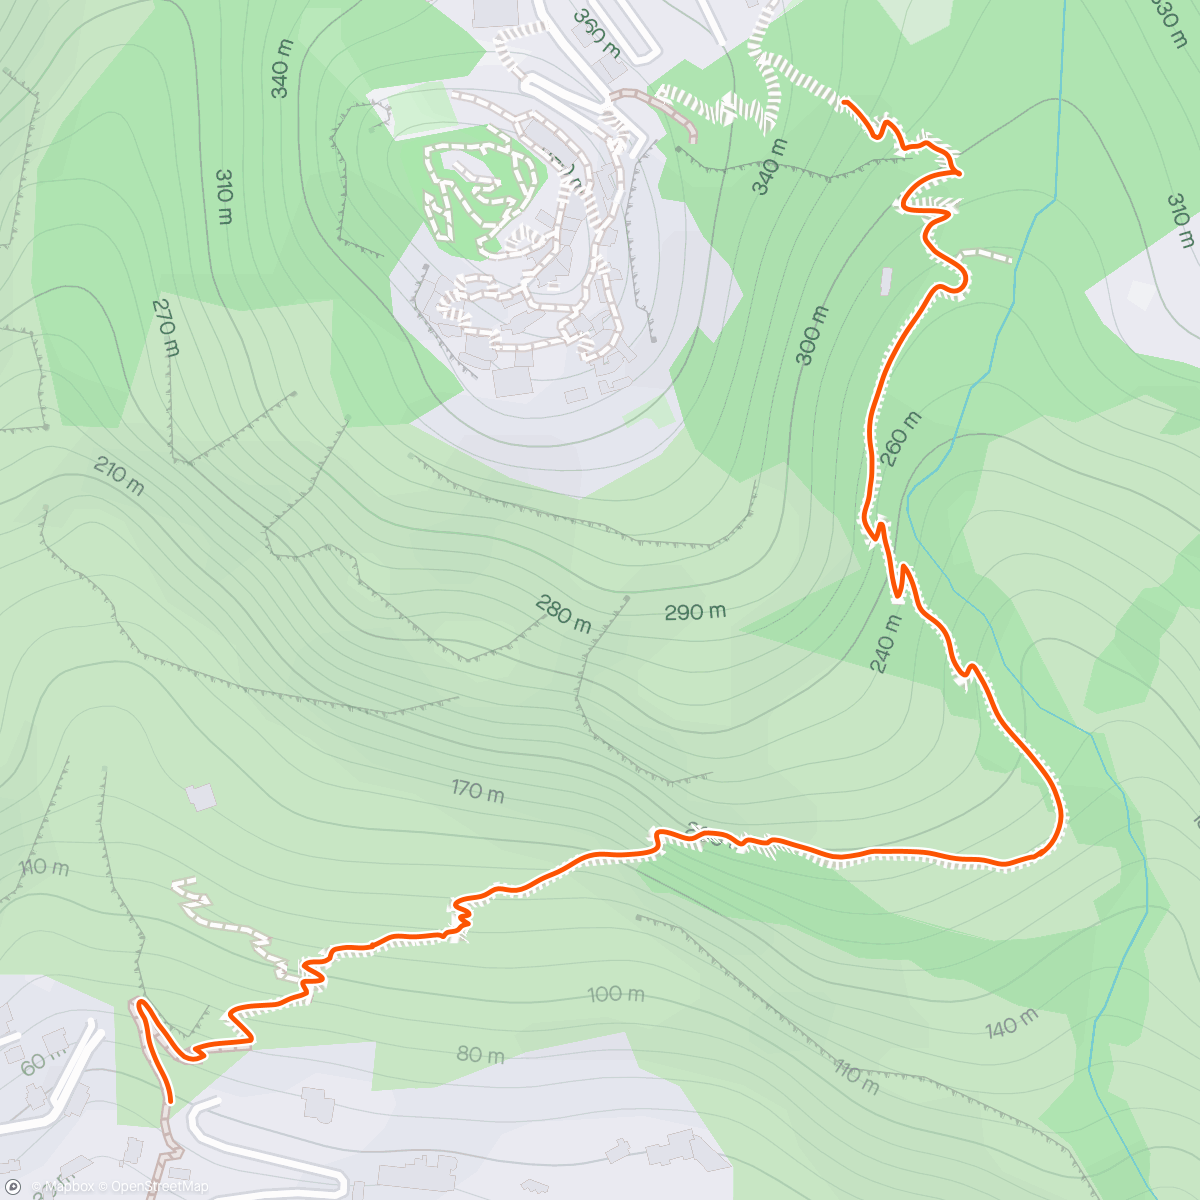 Mappa dell'attività Lunch Hike